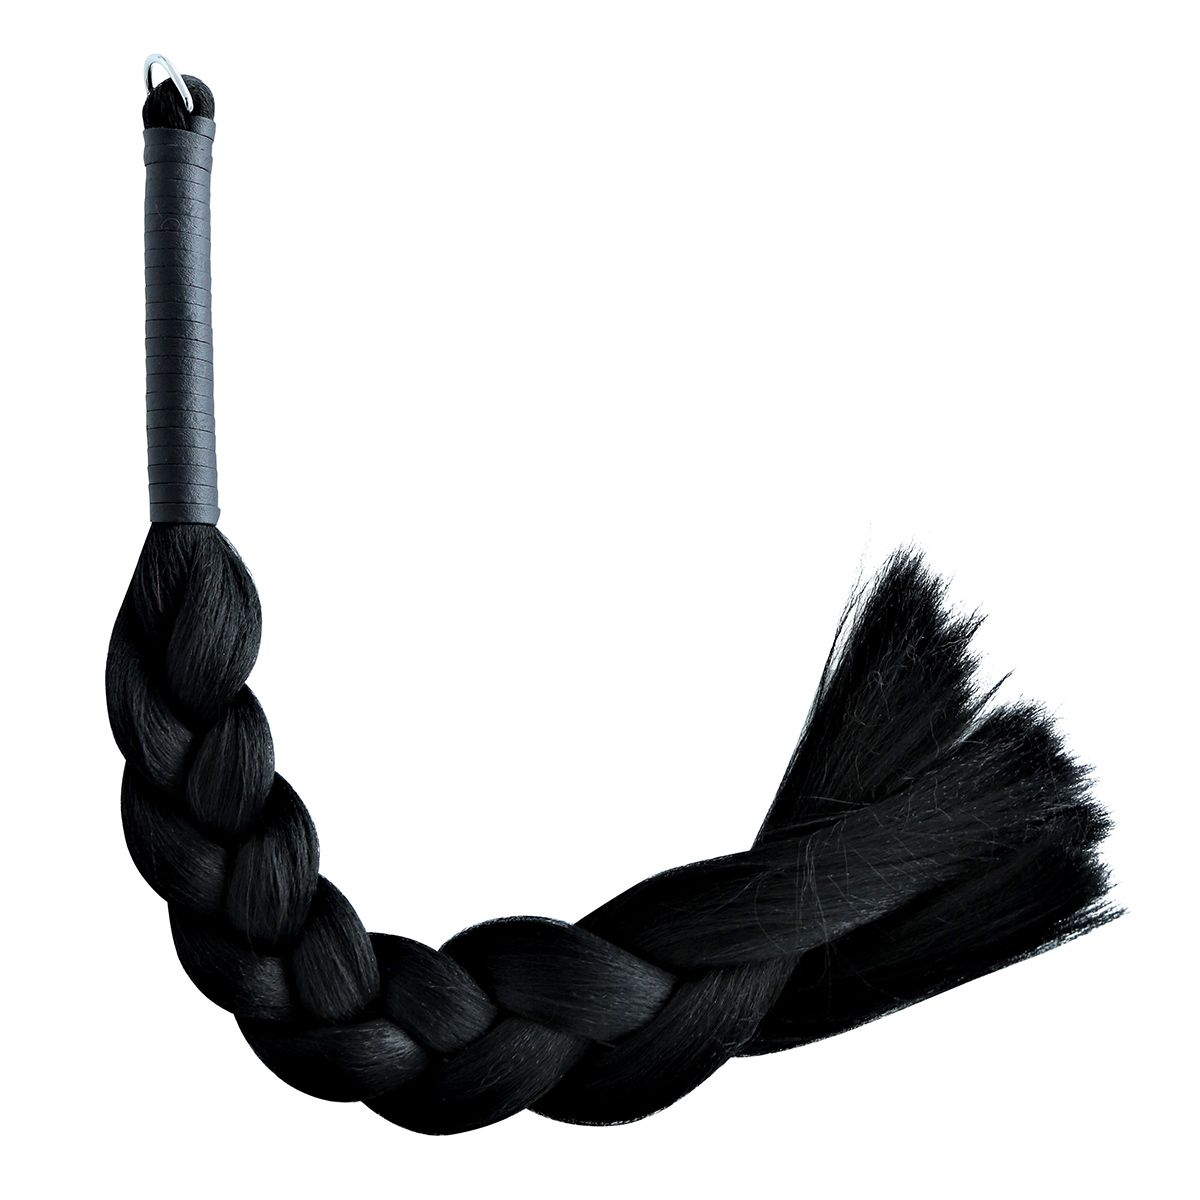 Vegan art hair whip/flogger